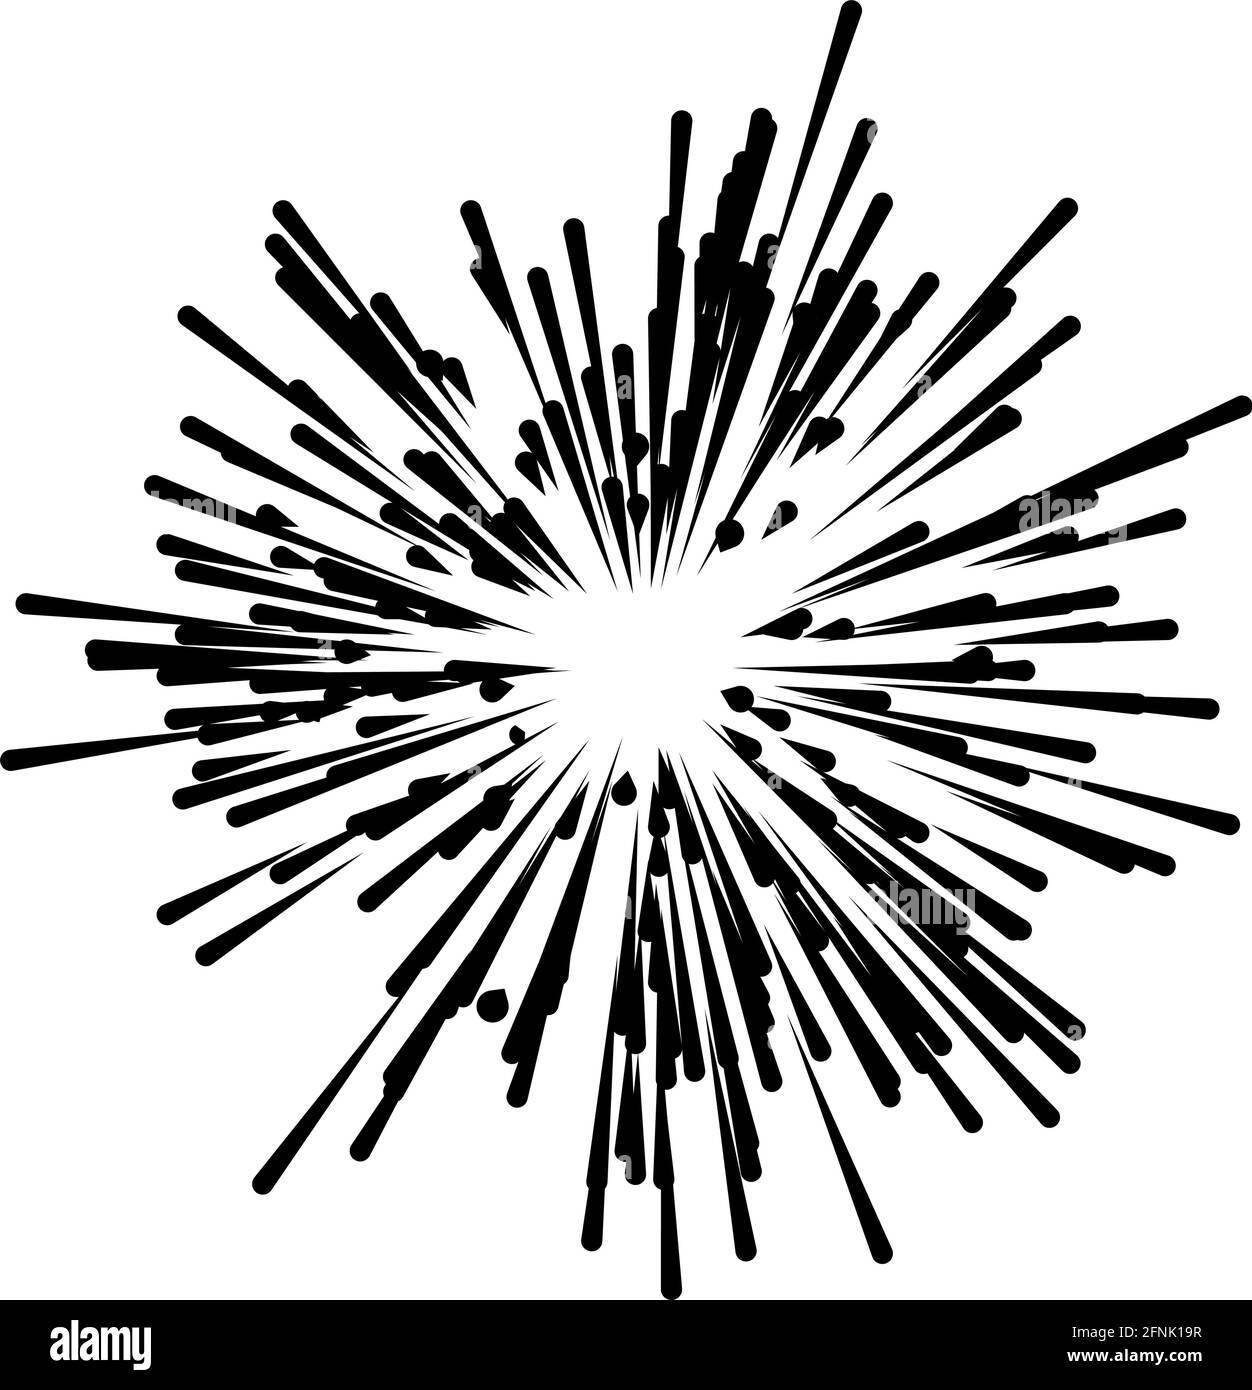 Radiale, strahlende Linien Strahlen, Strahlen. Zufällige Linien divergieren – Vektorgrafik, Clip-Art-Grafiken Stock Vektor